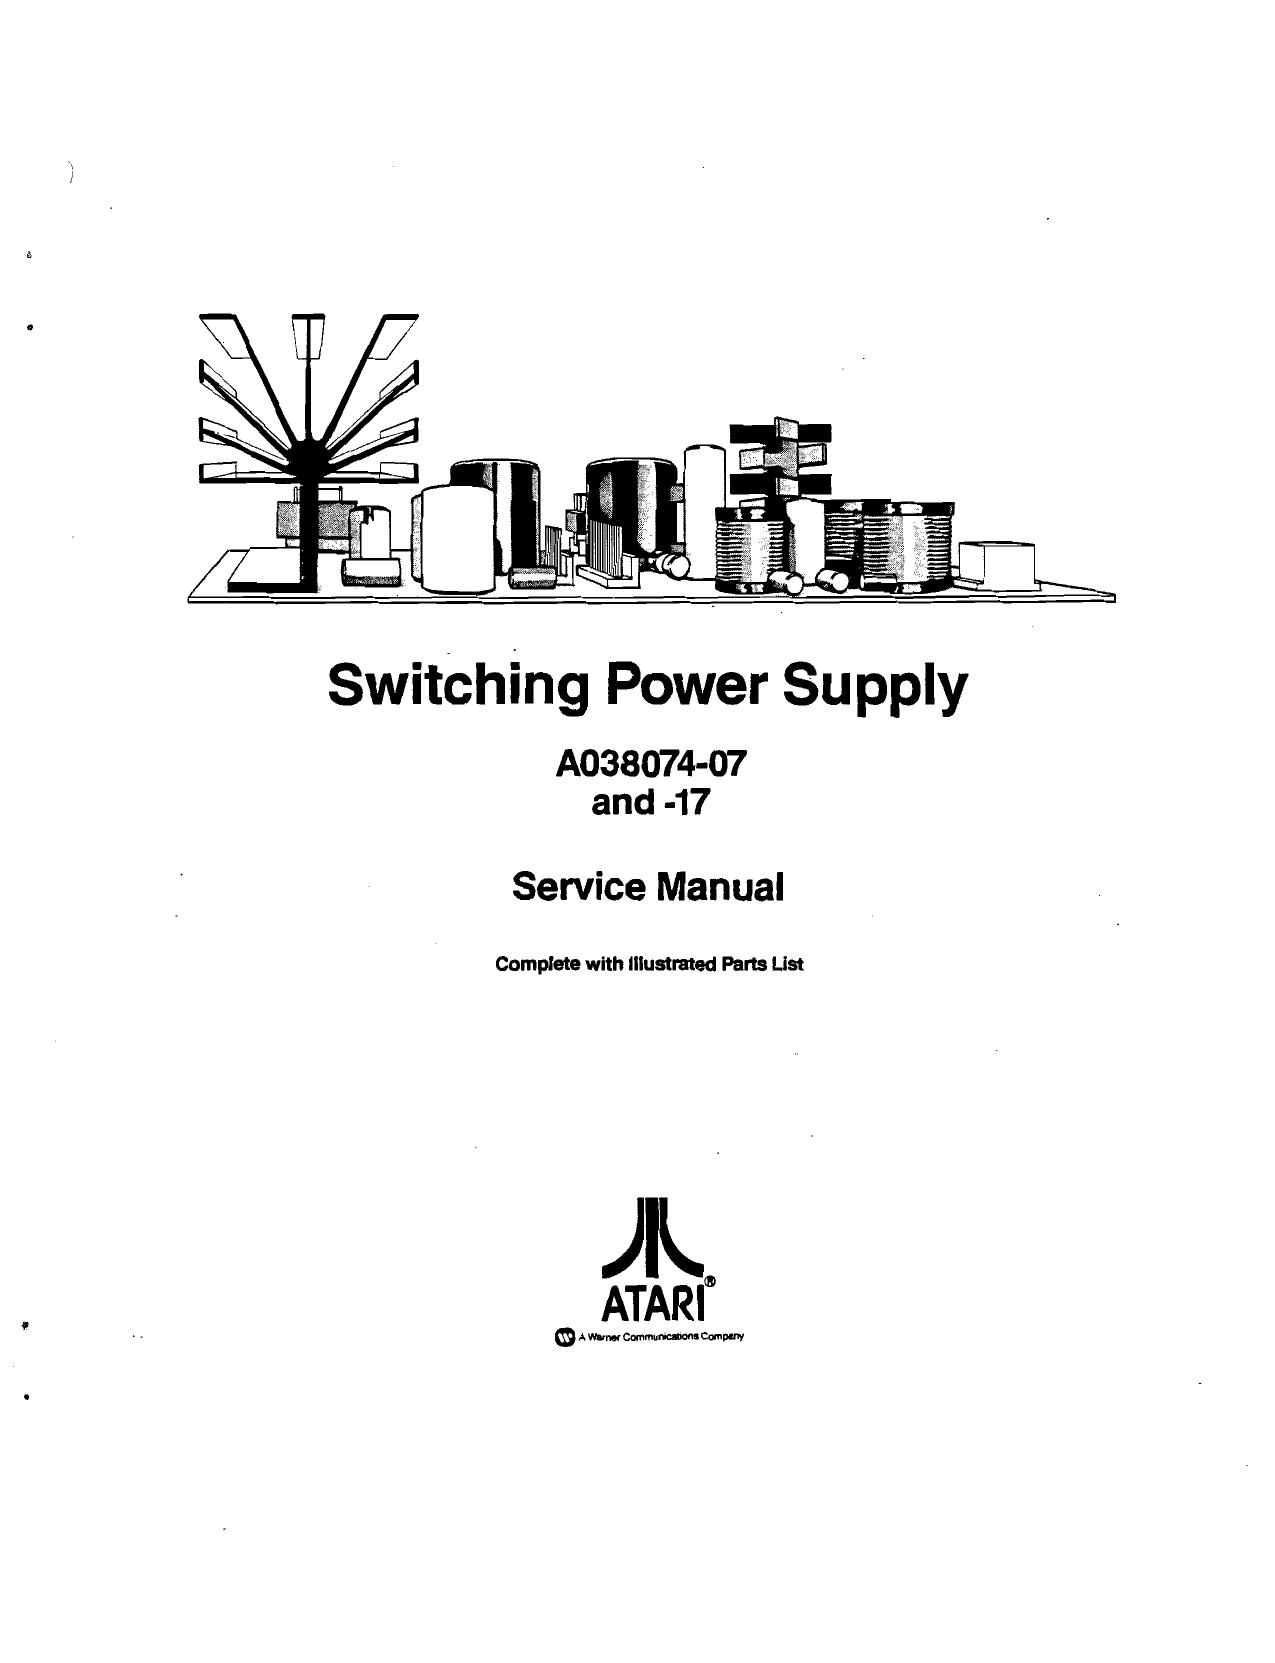 Atari Switching Power Supply TM-261 1st Printing